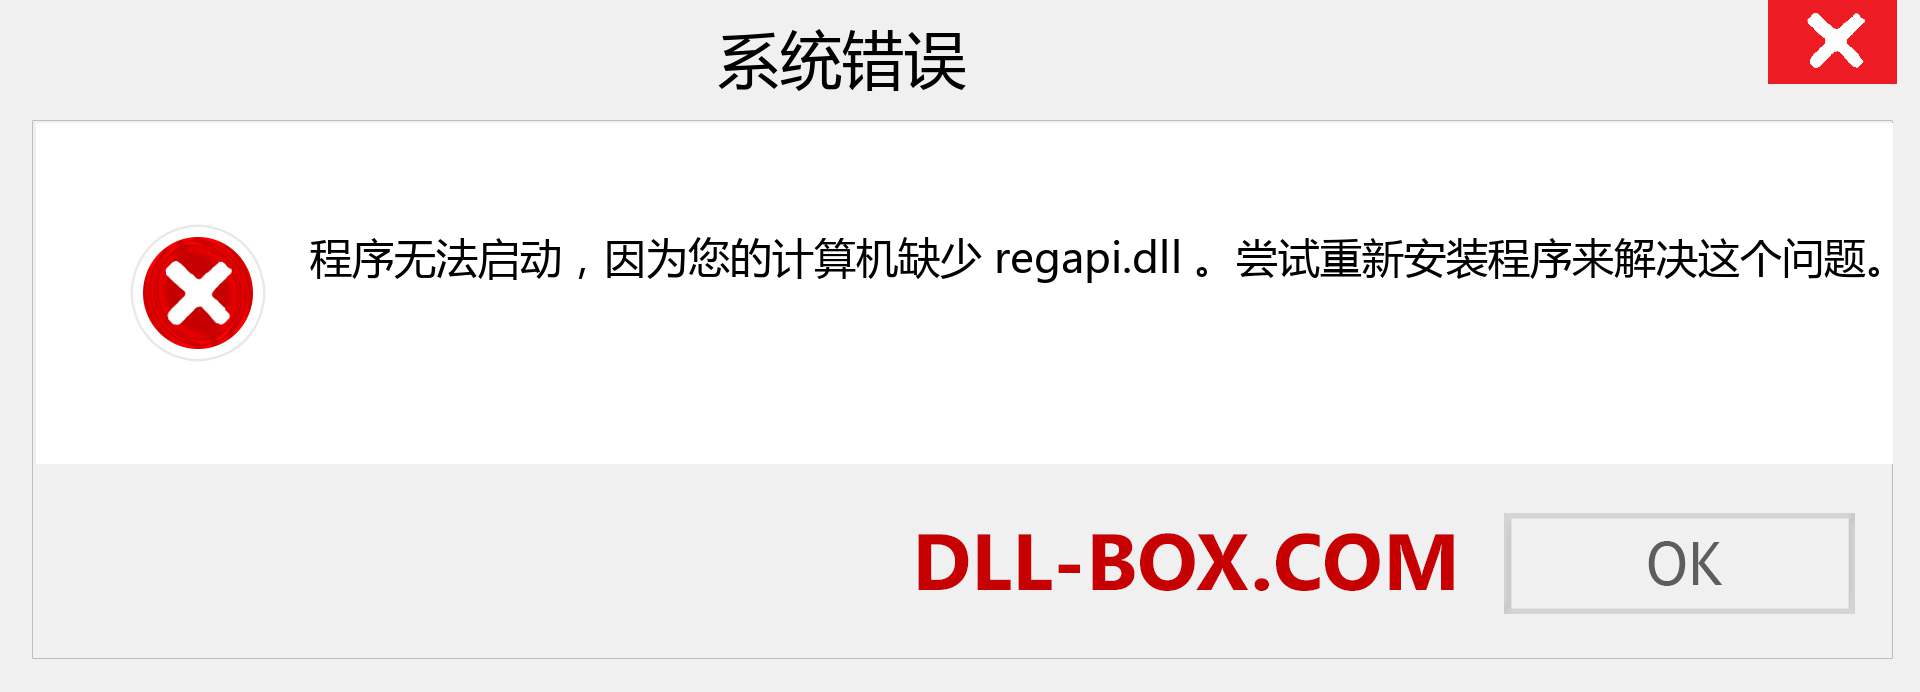 regapi.dll 文件丢失？。 适用于 Windows 7、8、10 的下载 - 修复 Windows、照片、图像上的 regapi dll 丢失错误